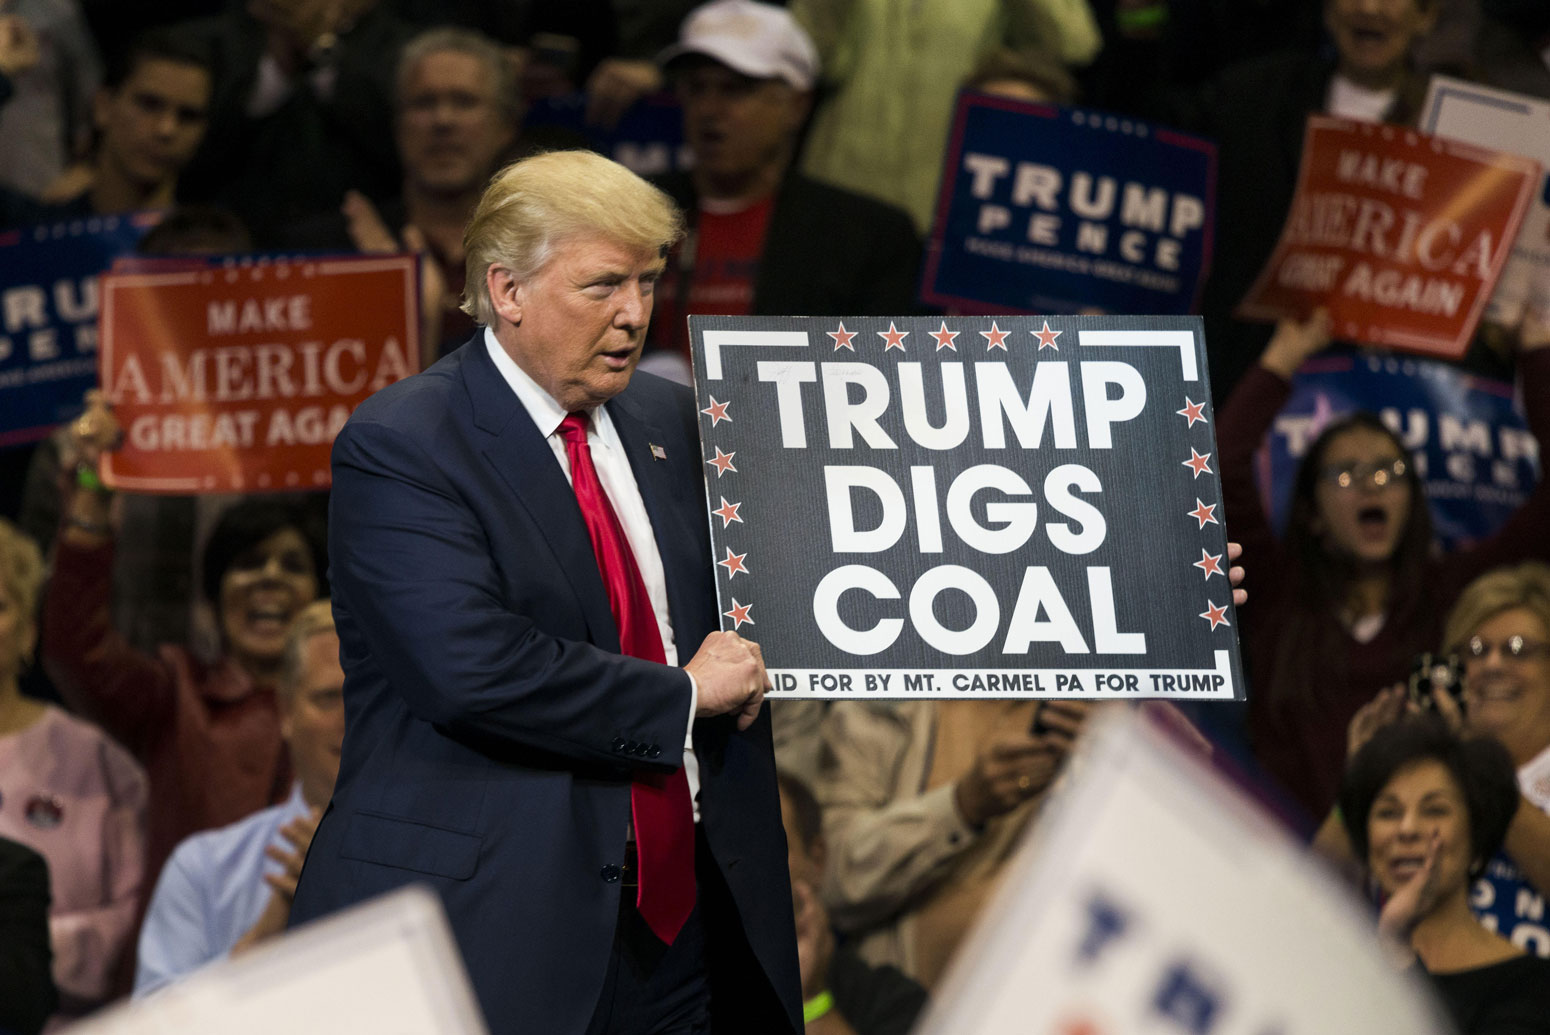 唐纳德特朗普持有特朗普在宾夕法尼亚州的集会上挖掘煤炭标语牌